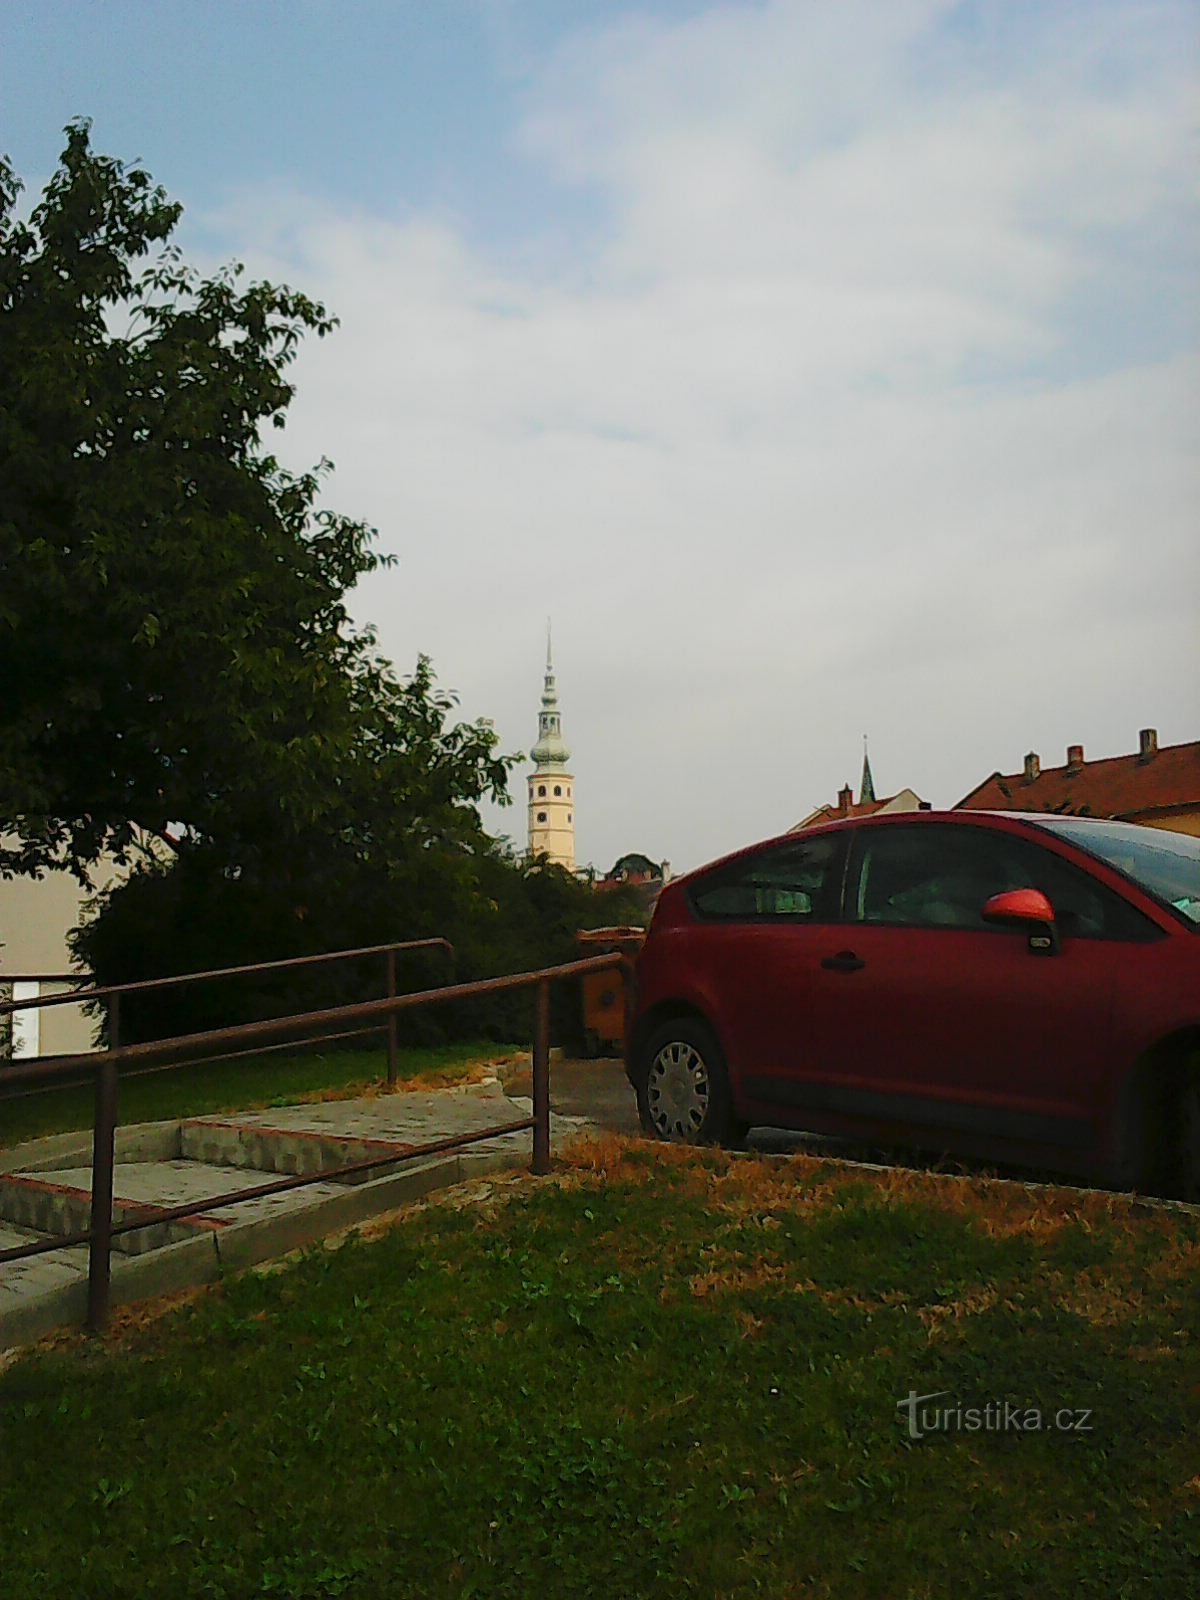 Der weithin sichtbare Turm der Burg Tovačovské - mein Hauptbezugspunkt :)